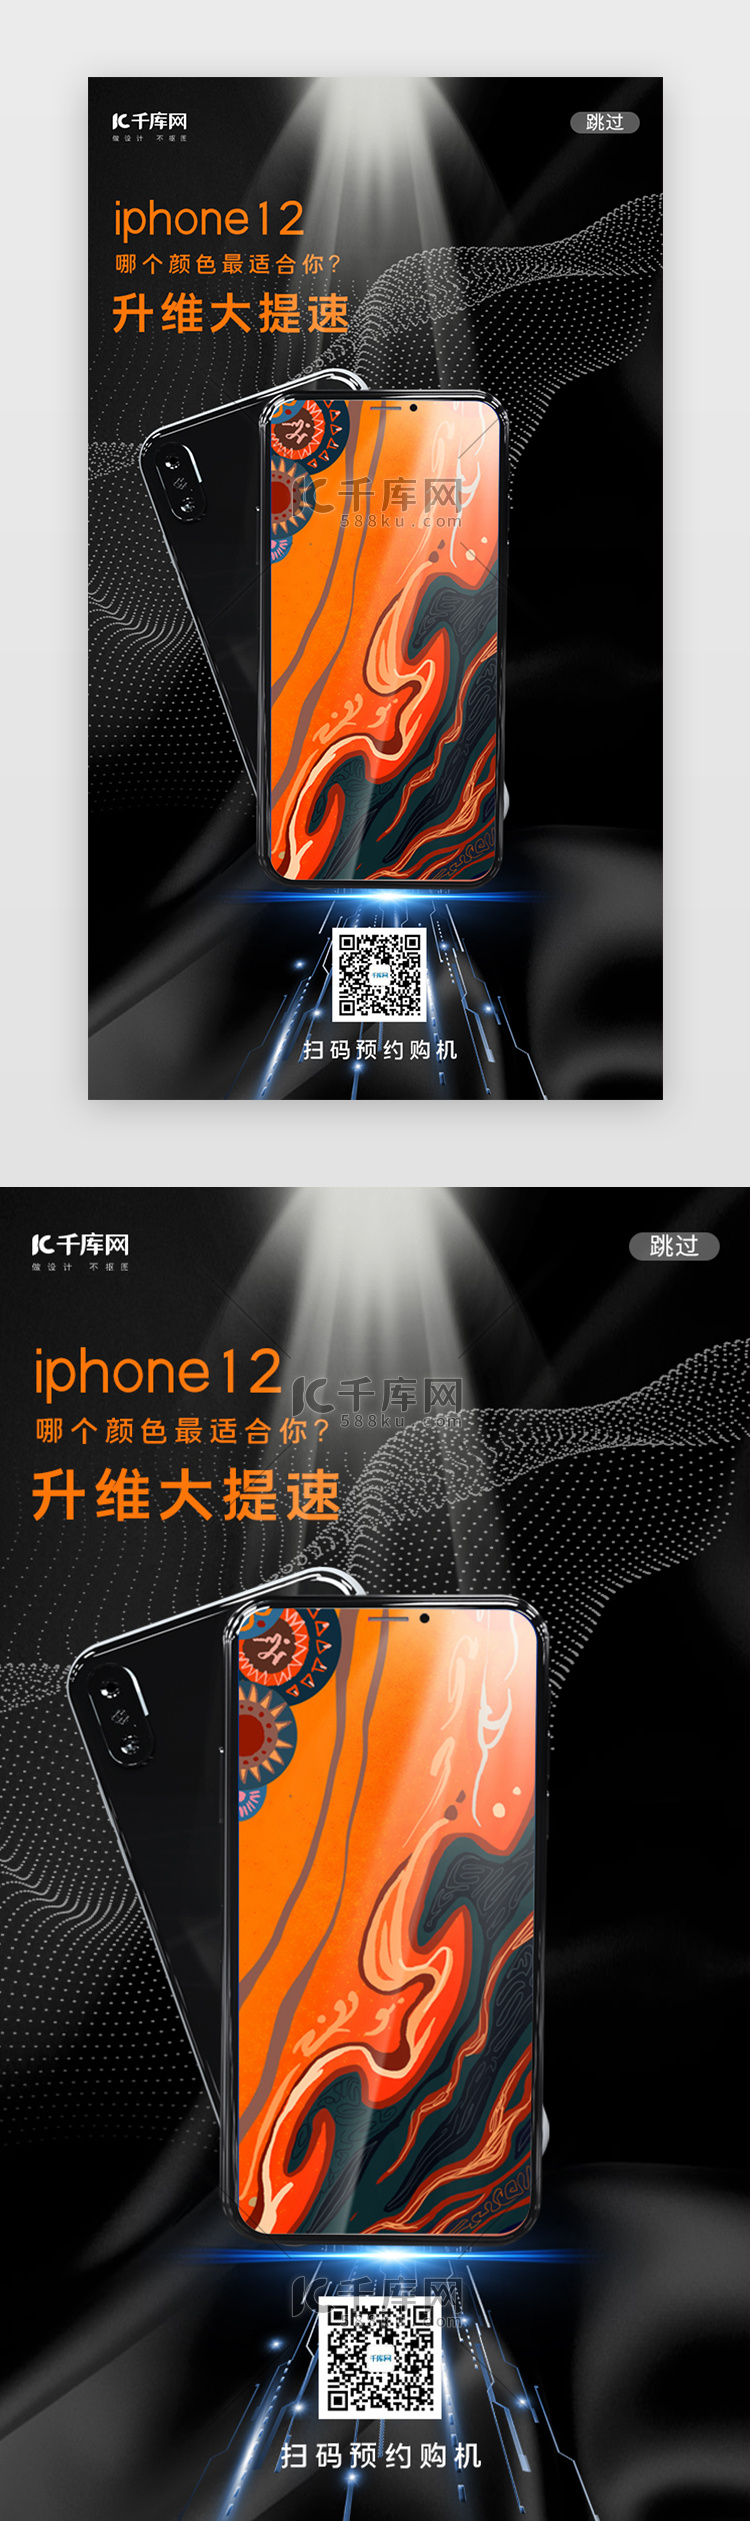 黑色创意iPhone12手机预售闪屏